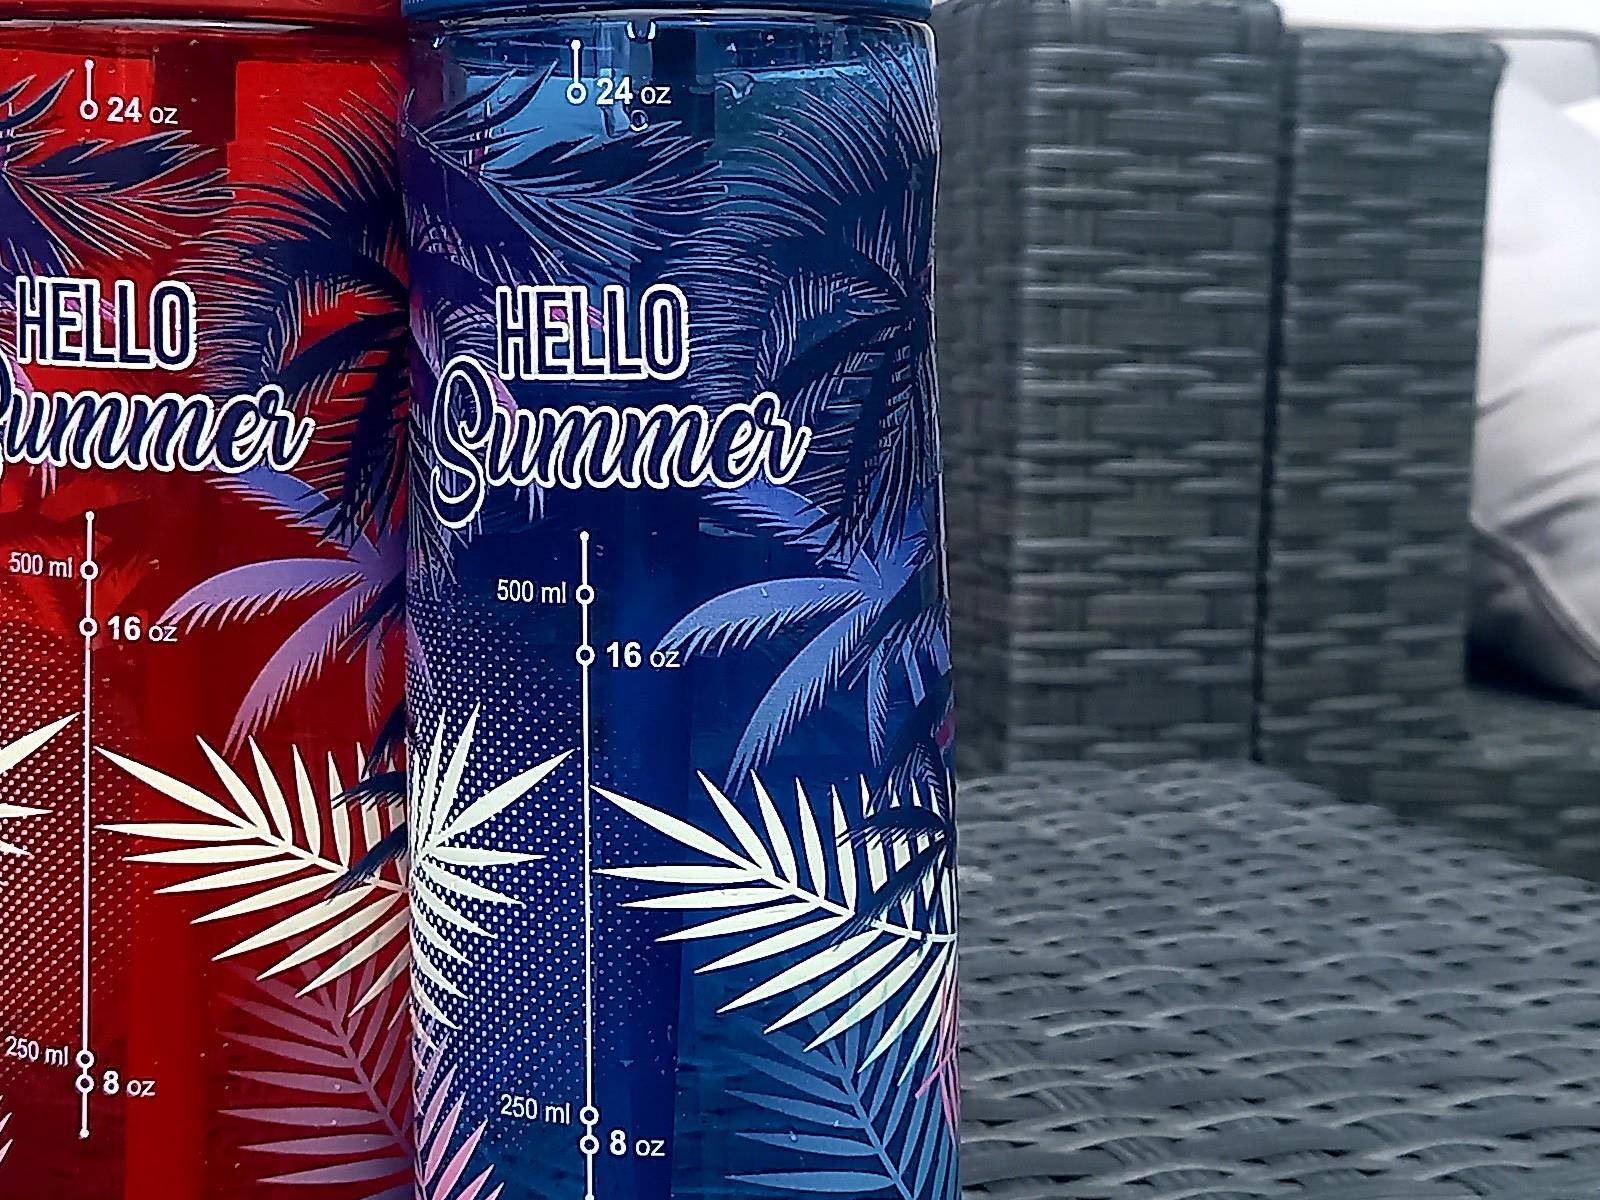 Bottle Contigo Ashland 720ml - Monaco/Grey- Hello Summer Blue